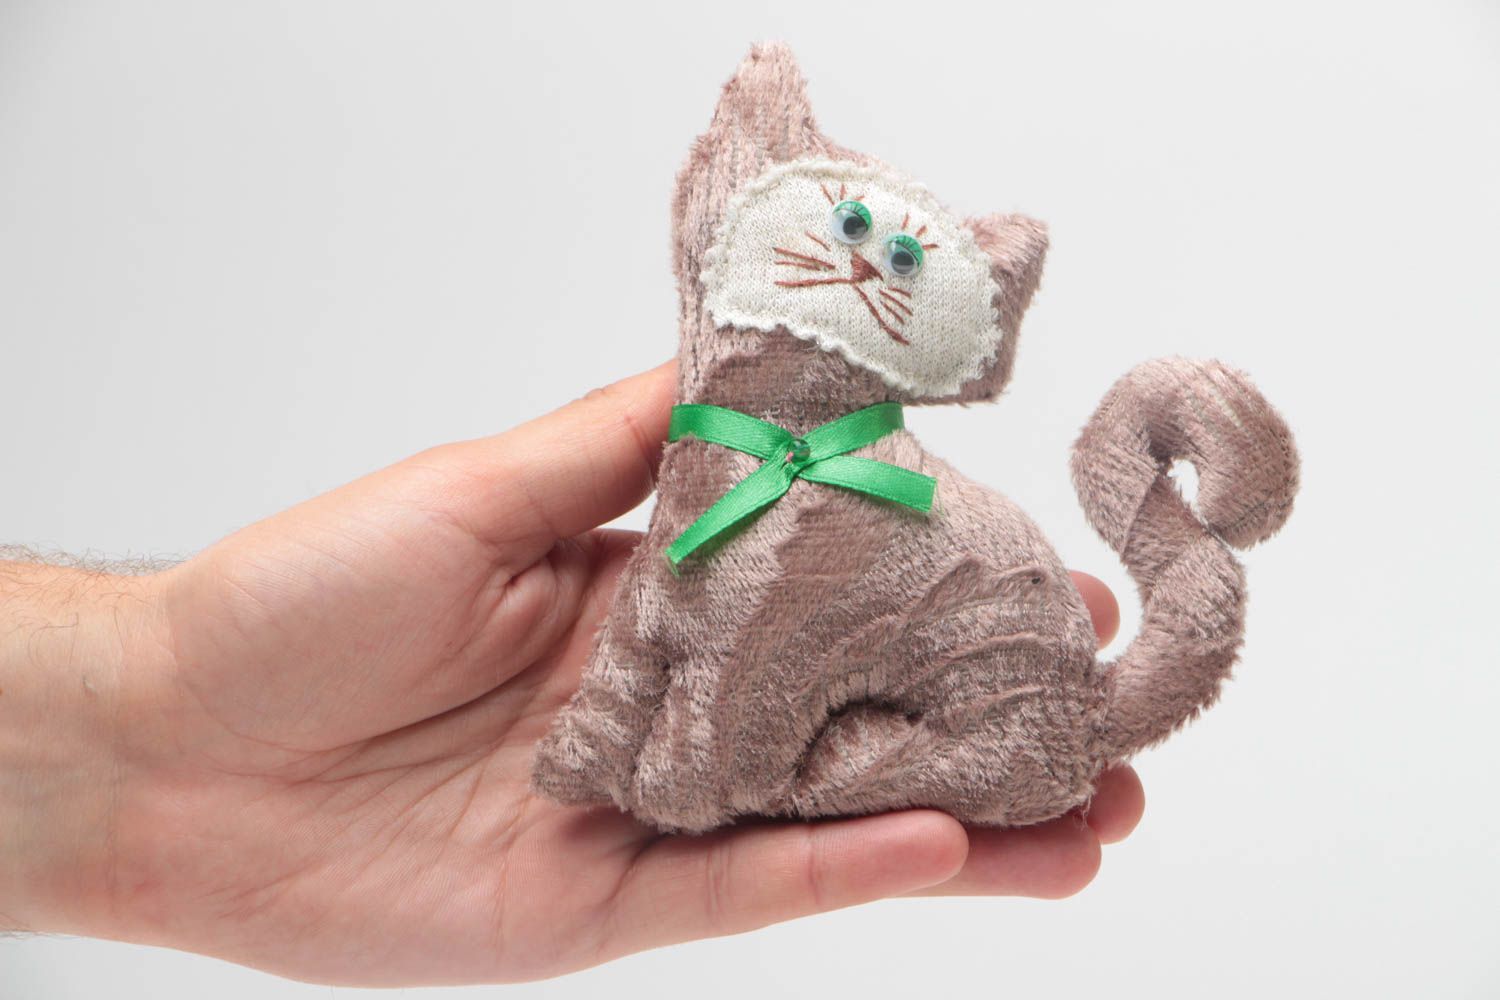 Textil Kuscheltier Kater aus Wolle weich bunt handmade Spielzeug für Kinder foto 5